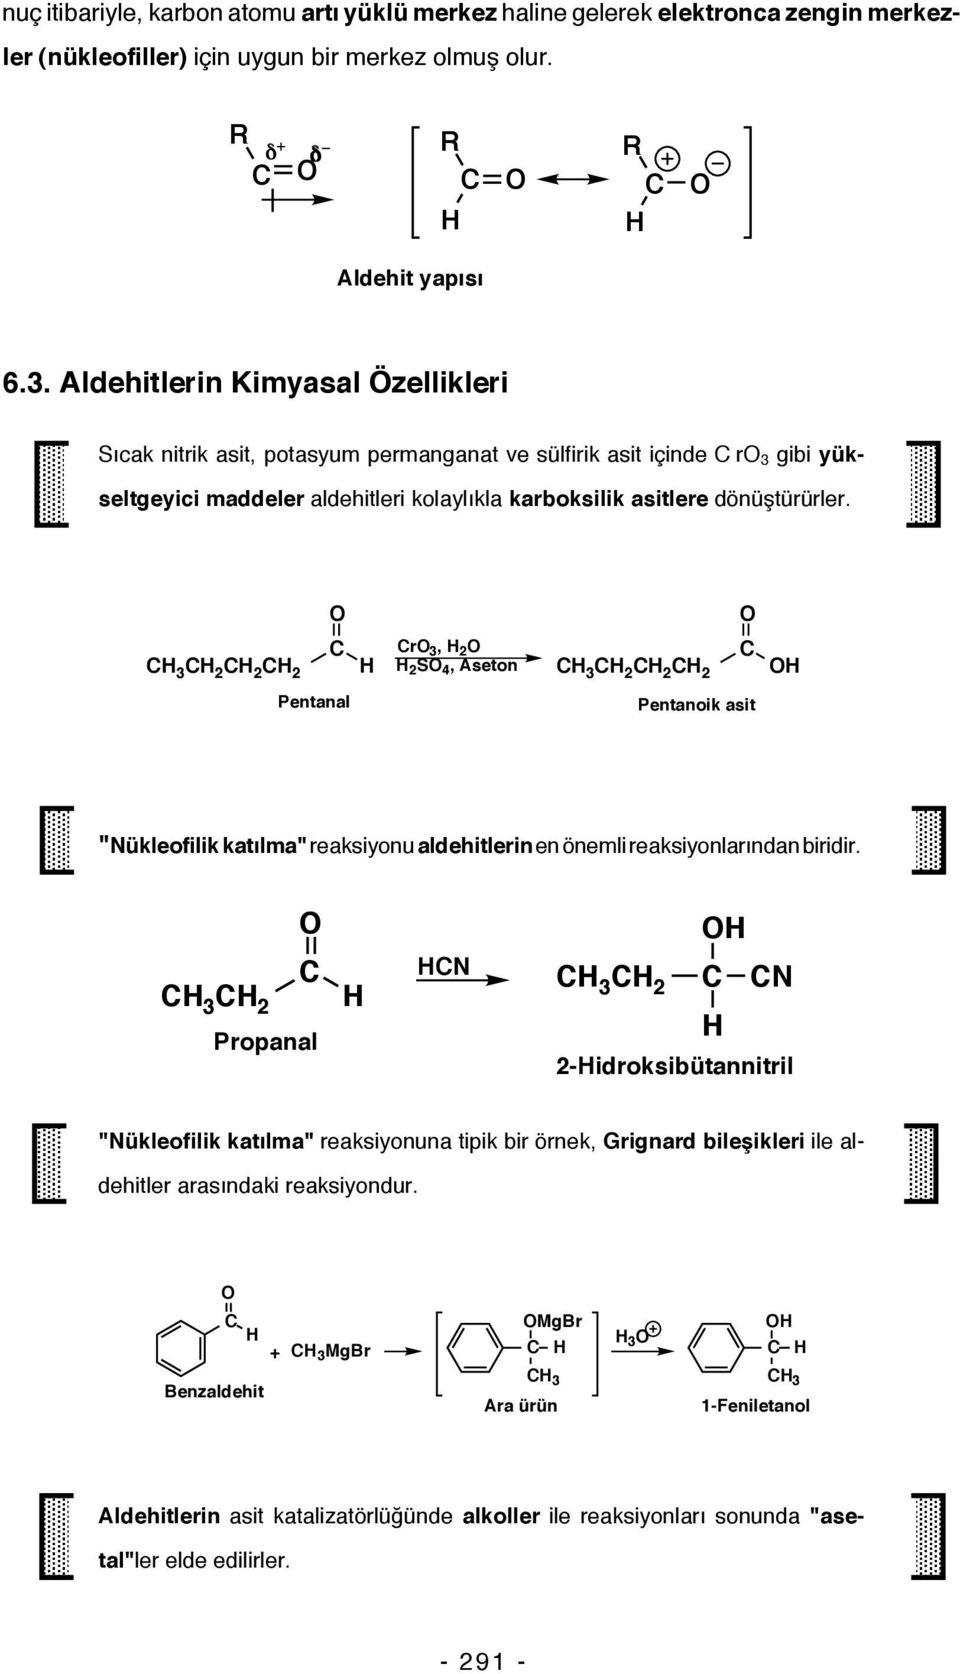 3 2 2 2 r 3, 2 2 S 4, Aseton 3 2 2 2 Pentanal Pentanoik asit "ükleofilik katılma" reaksiyonu aldehitlerin en önemli reaksiyonlarından biridir.